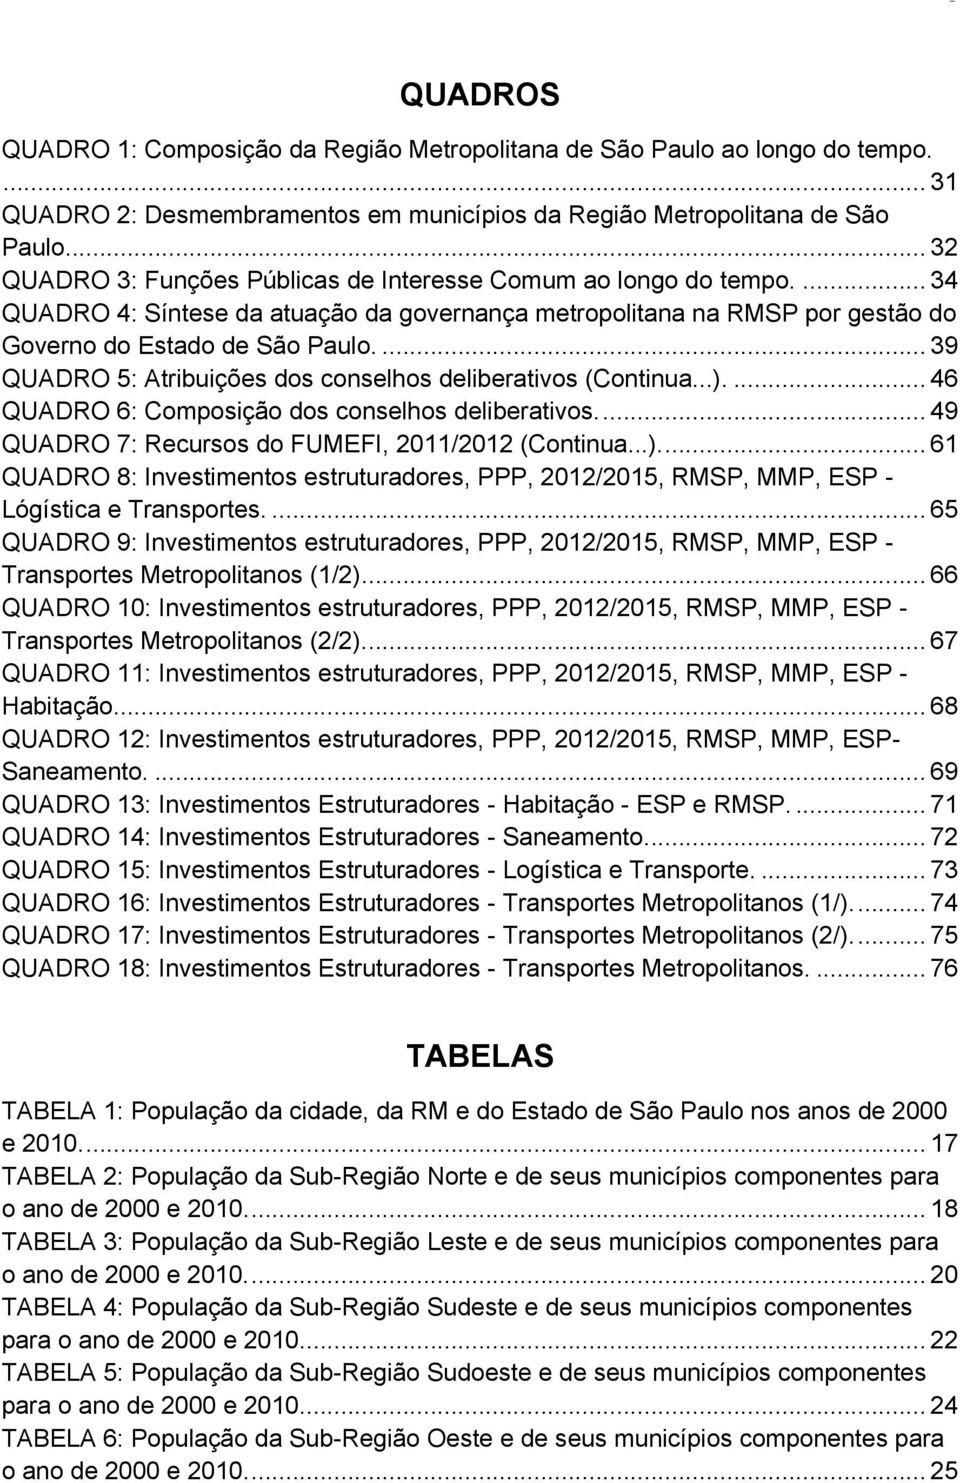 ... 39 QUADRO 5: Atribuições dos conselhos deliberativos (Continua...).... 46 QUADRO 6: Composição dos conselhos deliberativos.... 49 QUADRO 7: Recursos do FUMEFI, 2011/2012 (Continua...).... 61 QUADRO 8: Investimentos estruturadores, PPP, 2012/2015, RMSP, MMP, ESP - Lógística e Transportes.